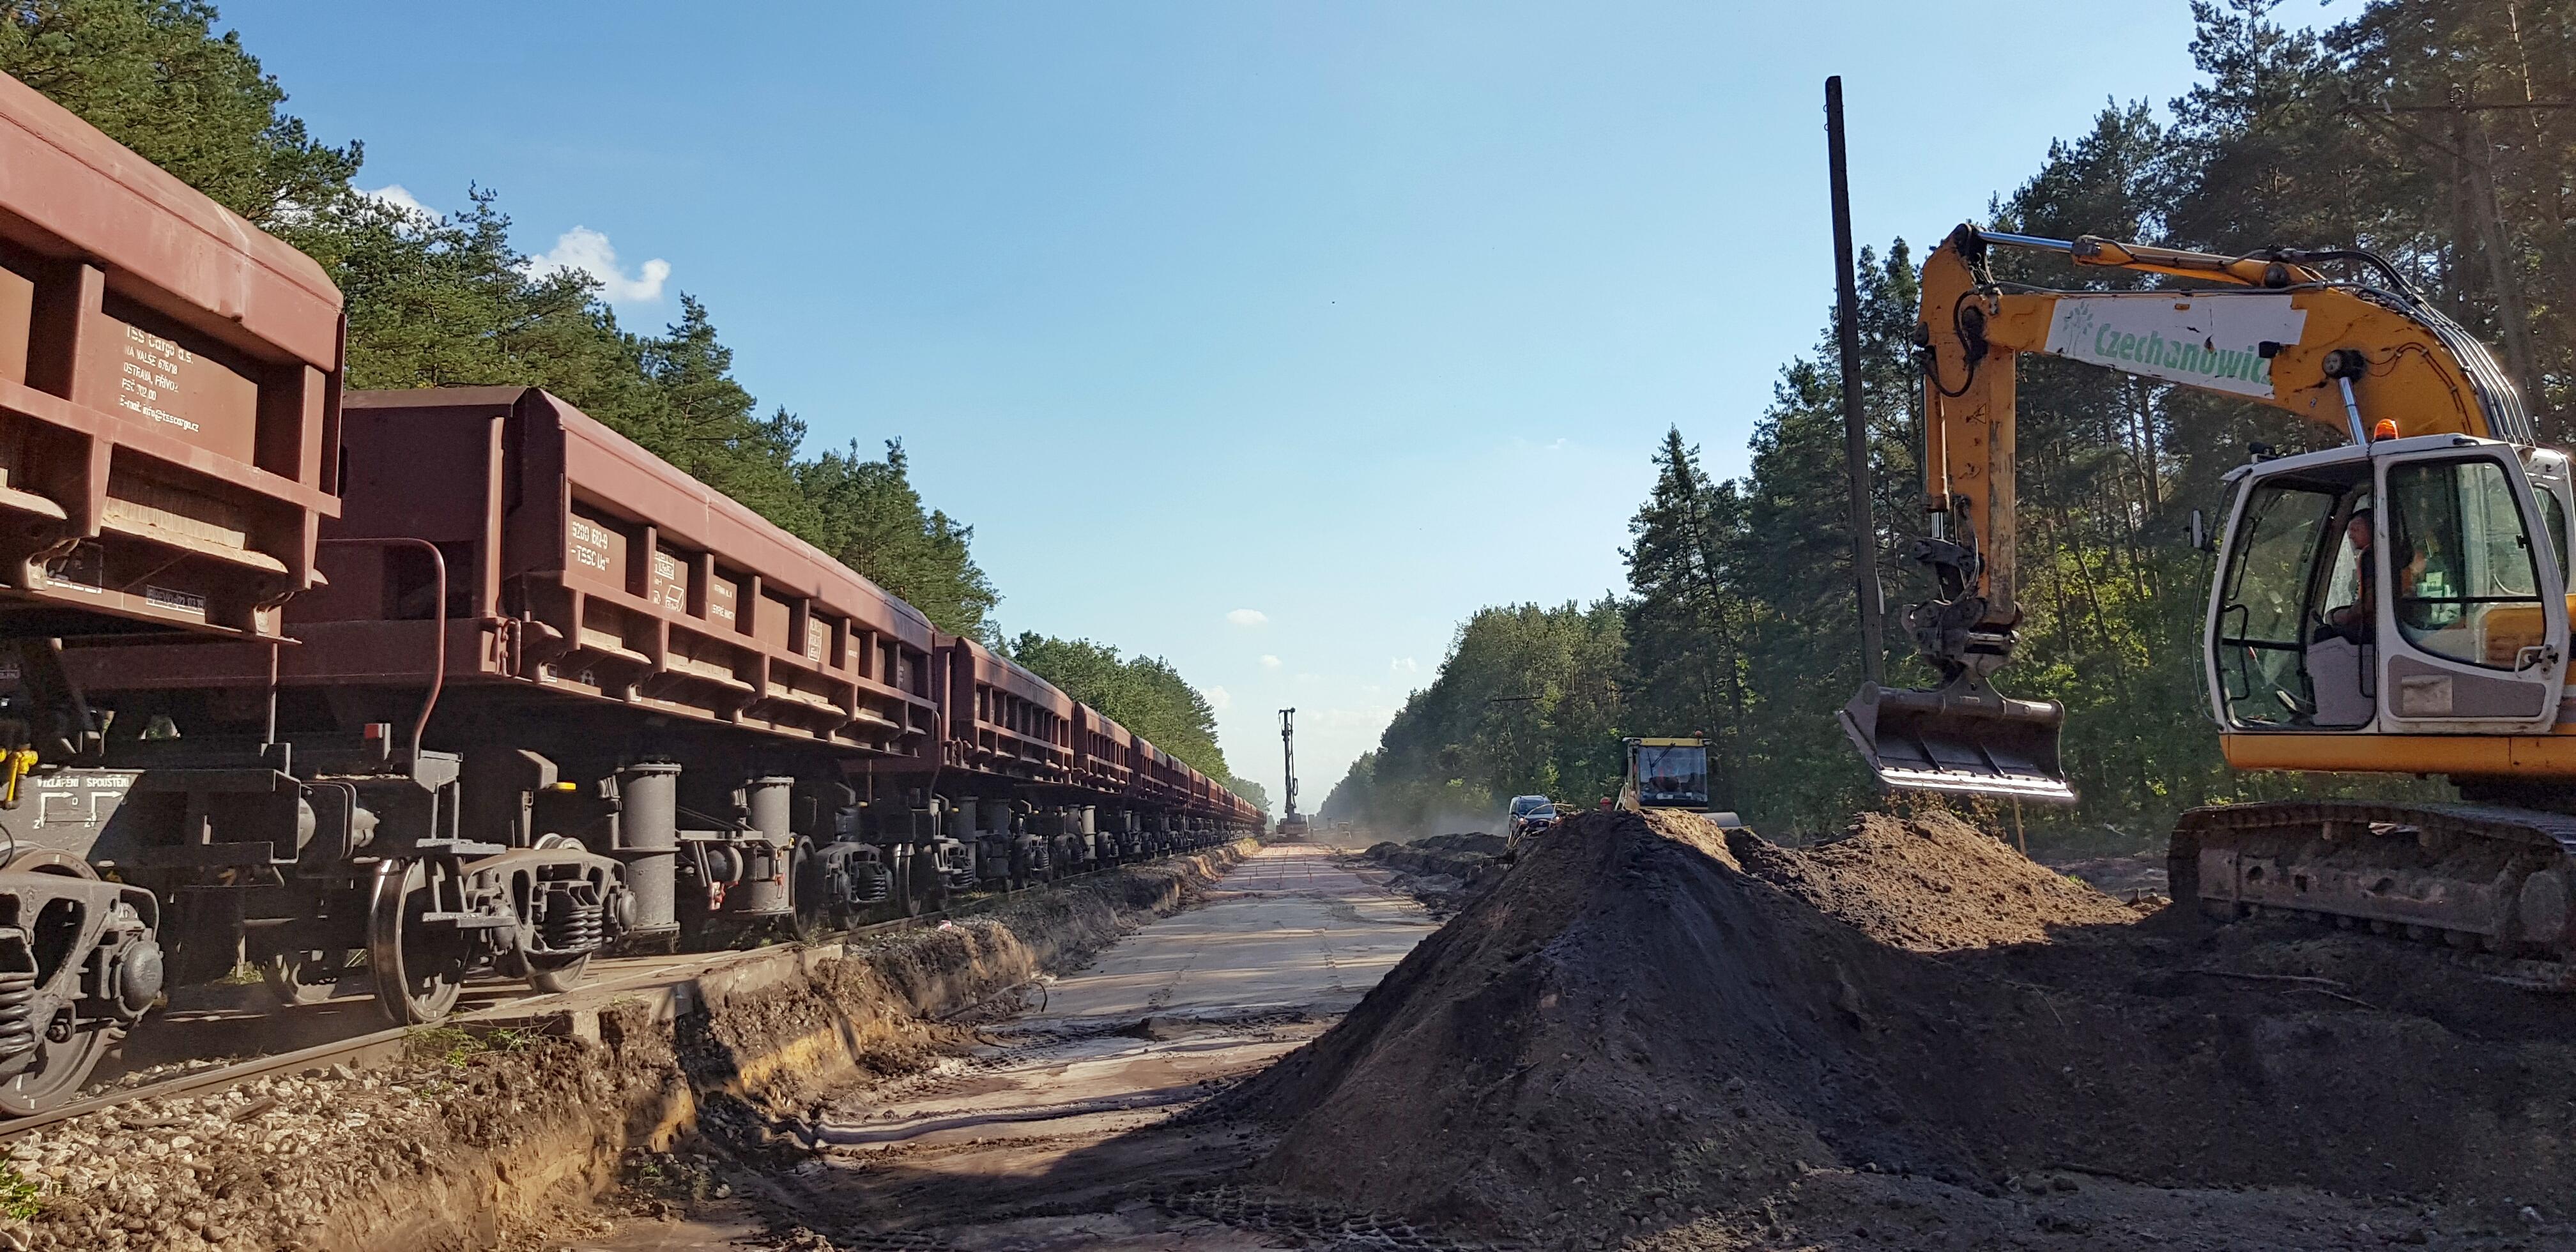 Prace budowlane na torze kolejowym, Kraków  - Bahnbau